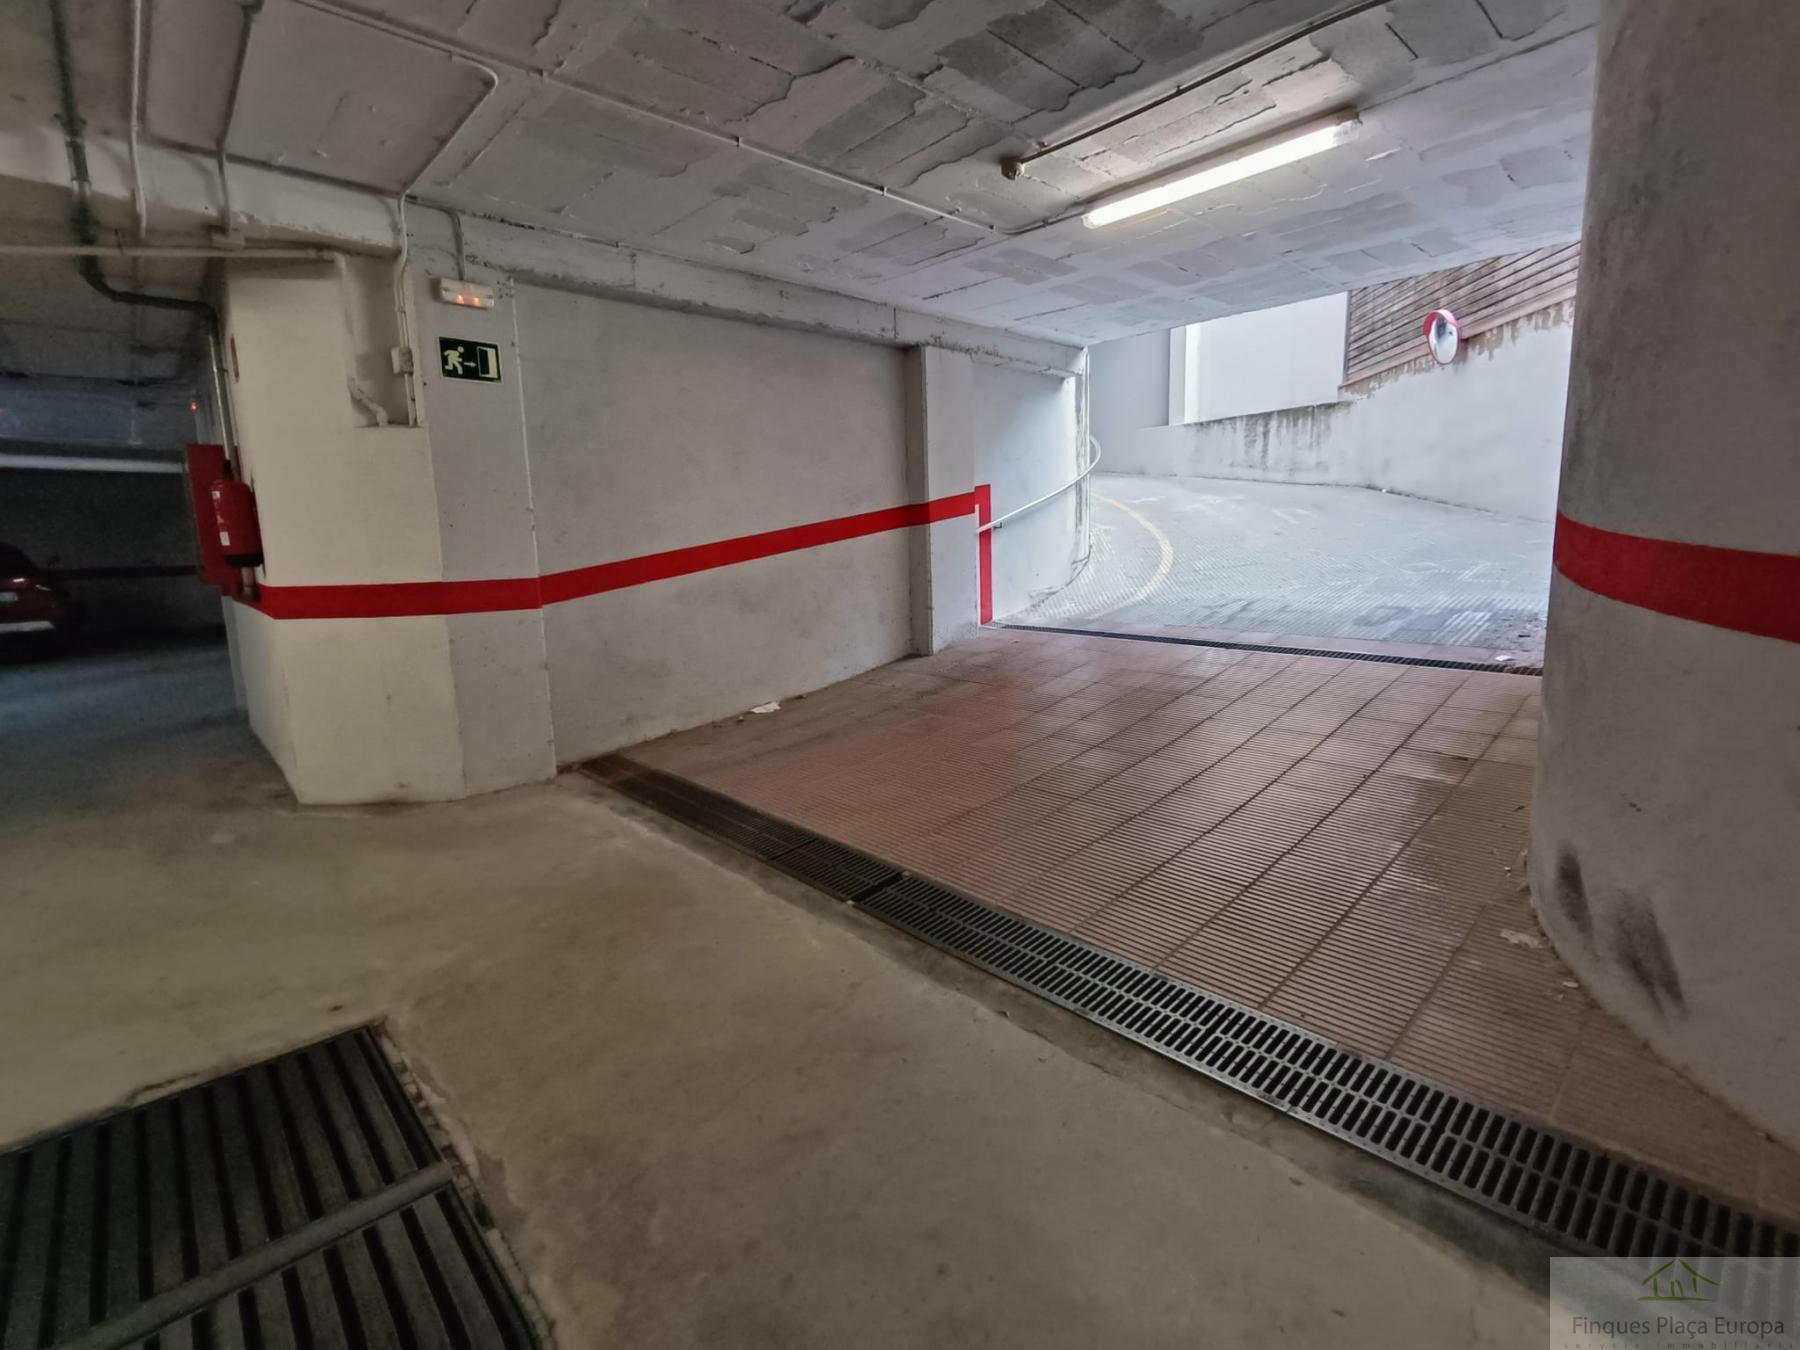 For sale of garage in Santa Cristina D´aro